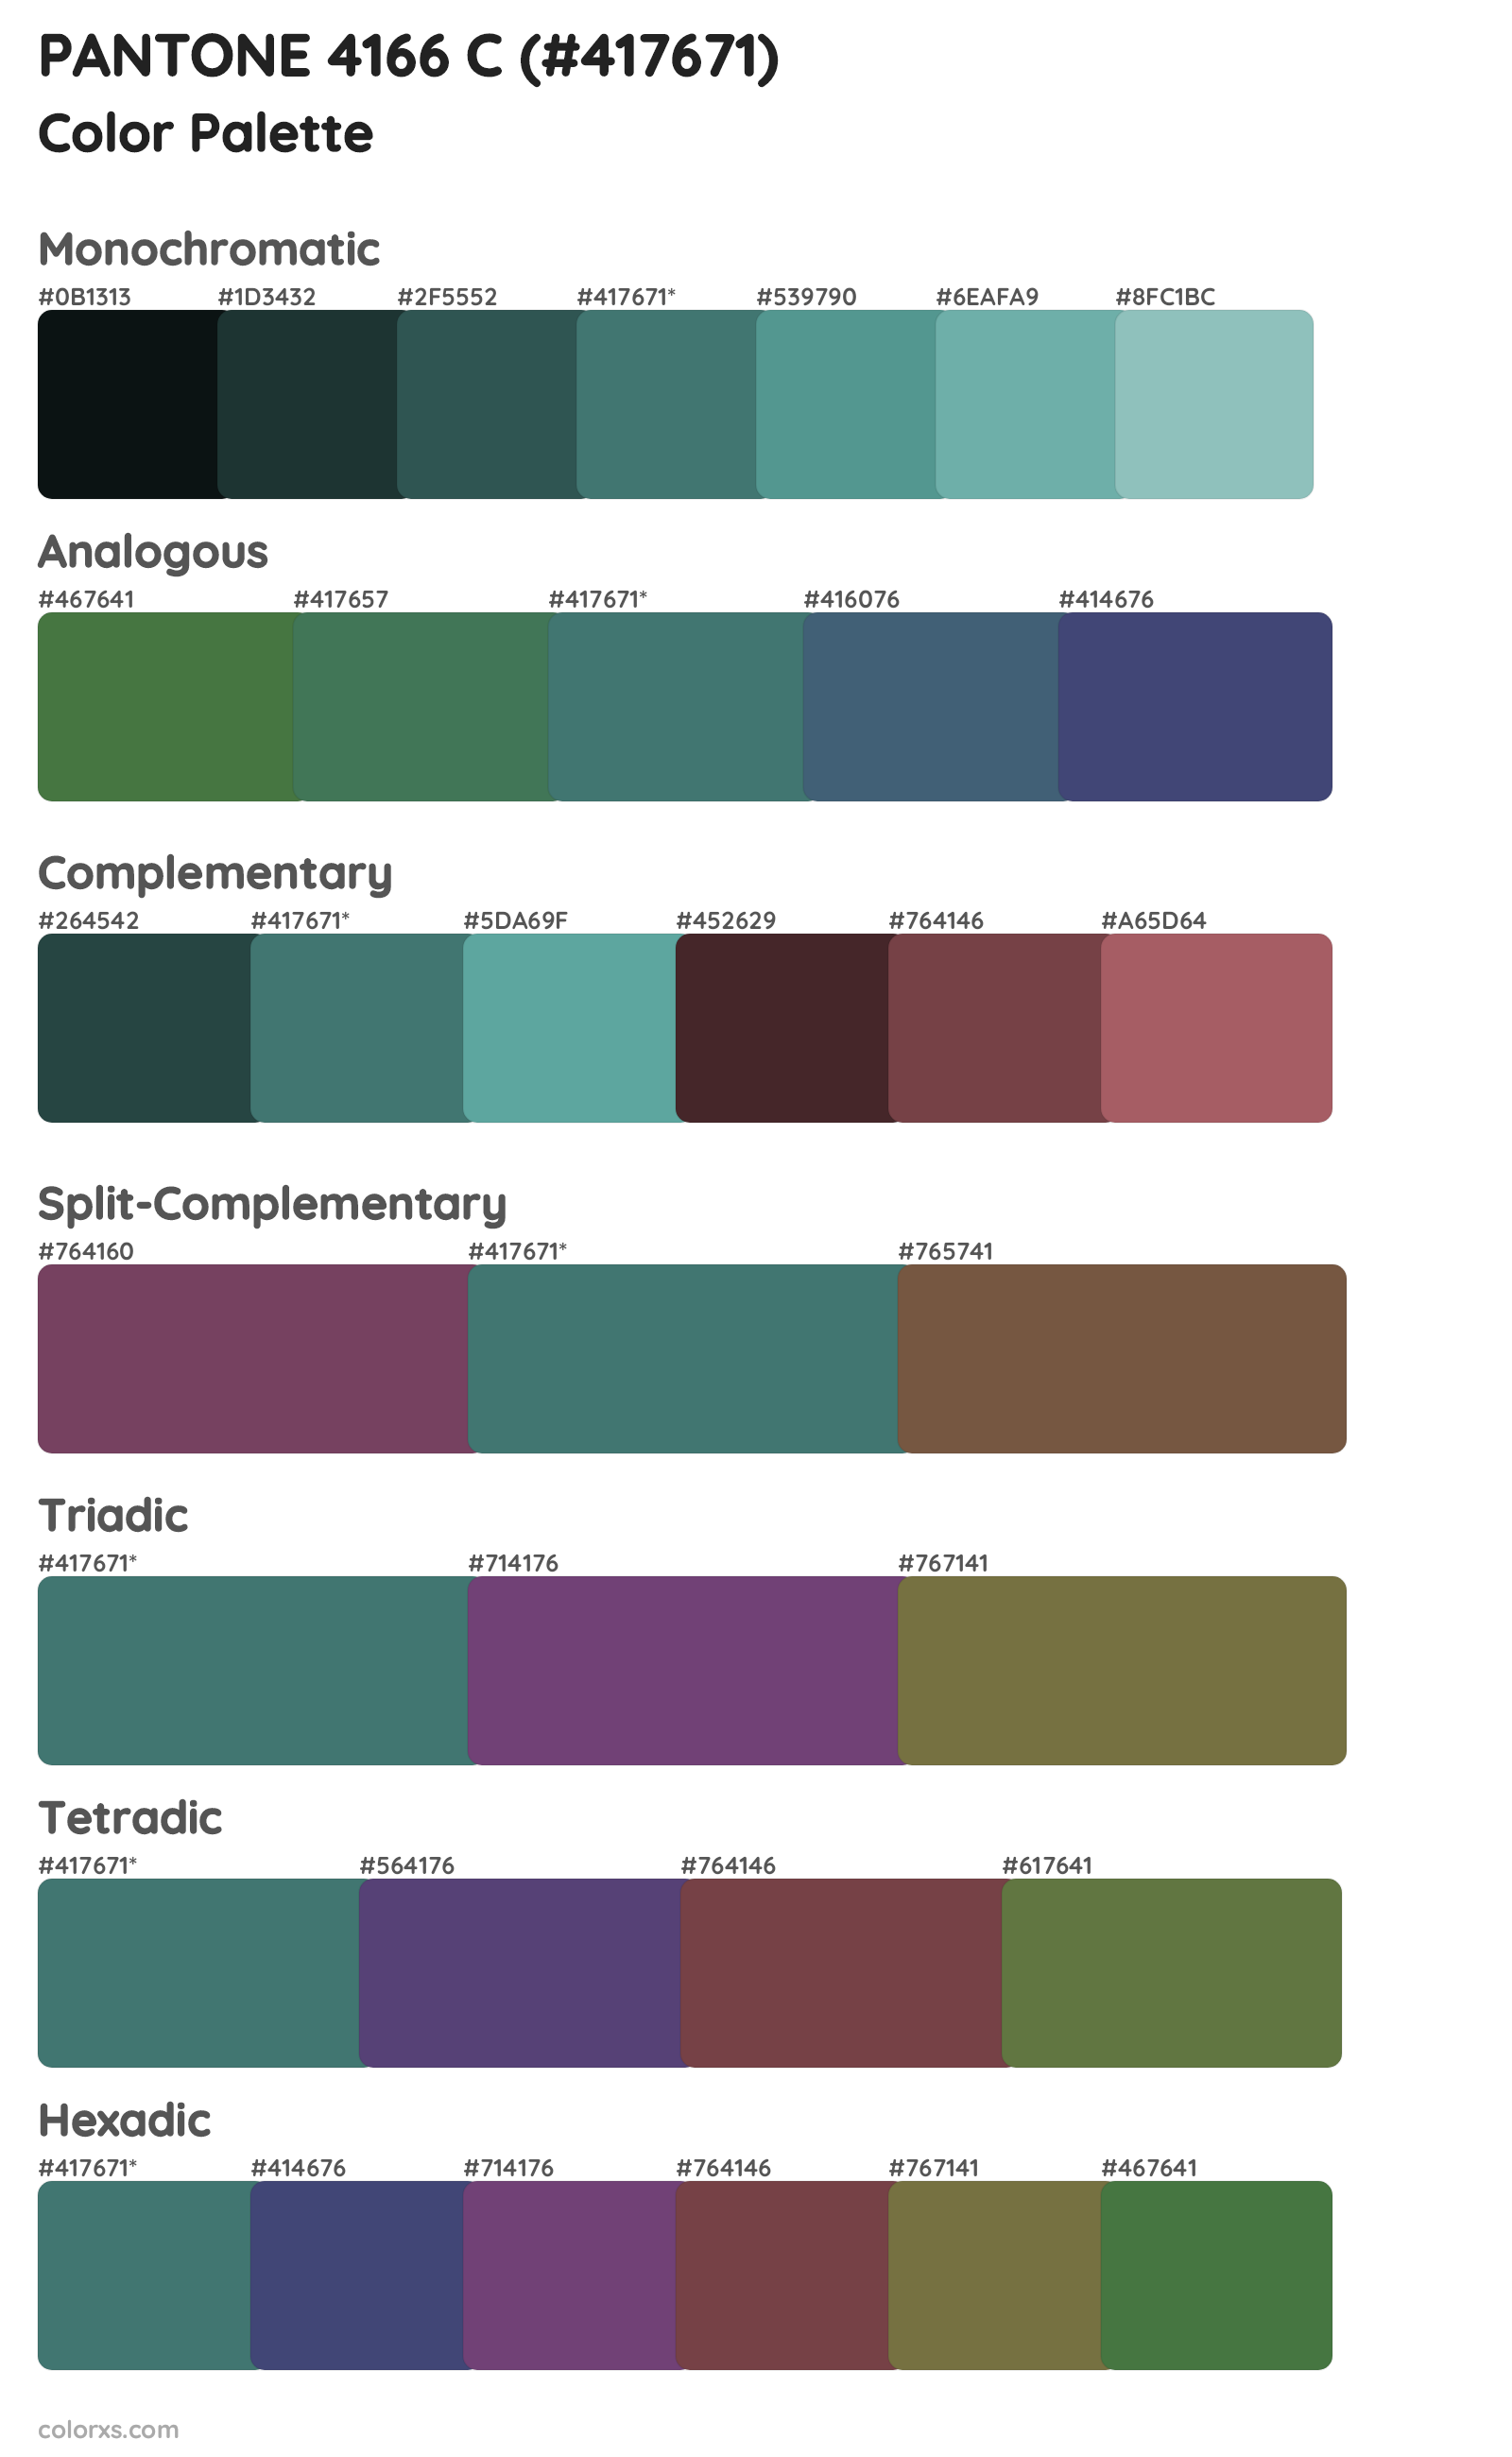 PANTONE 4166 C Color Scheme Palettes